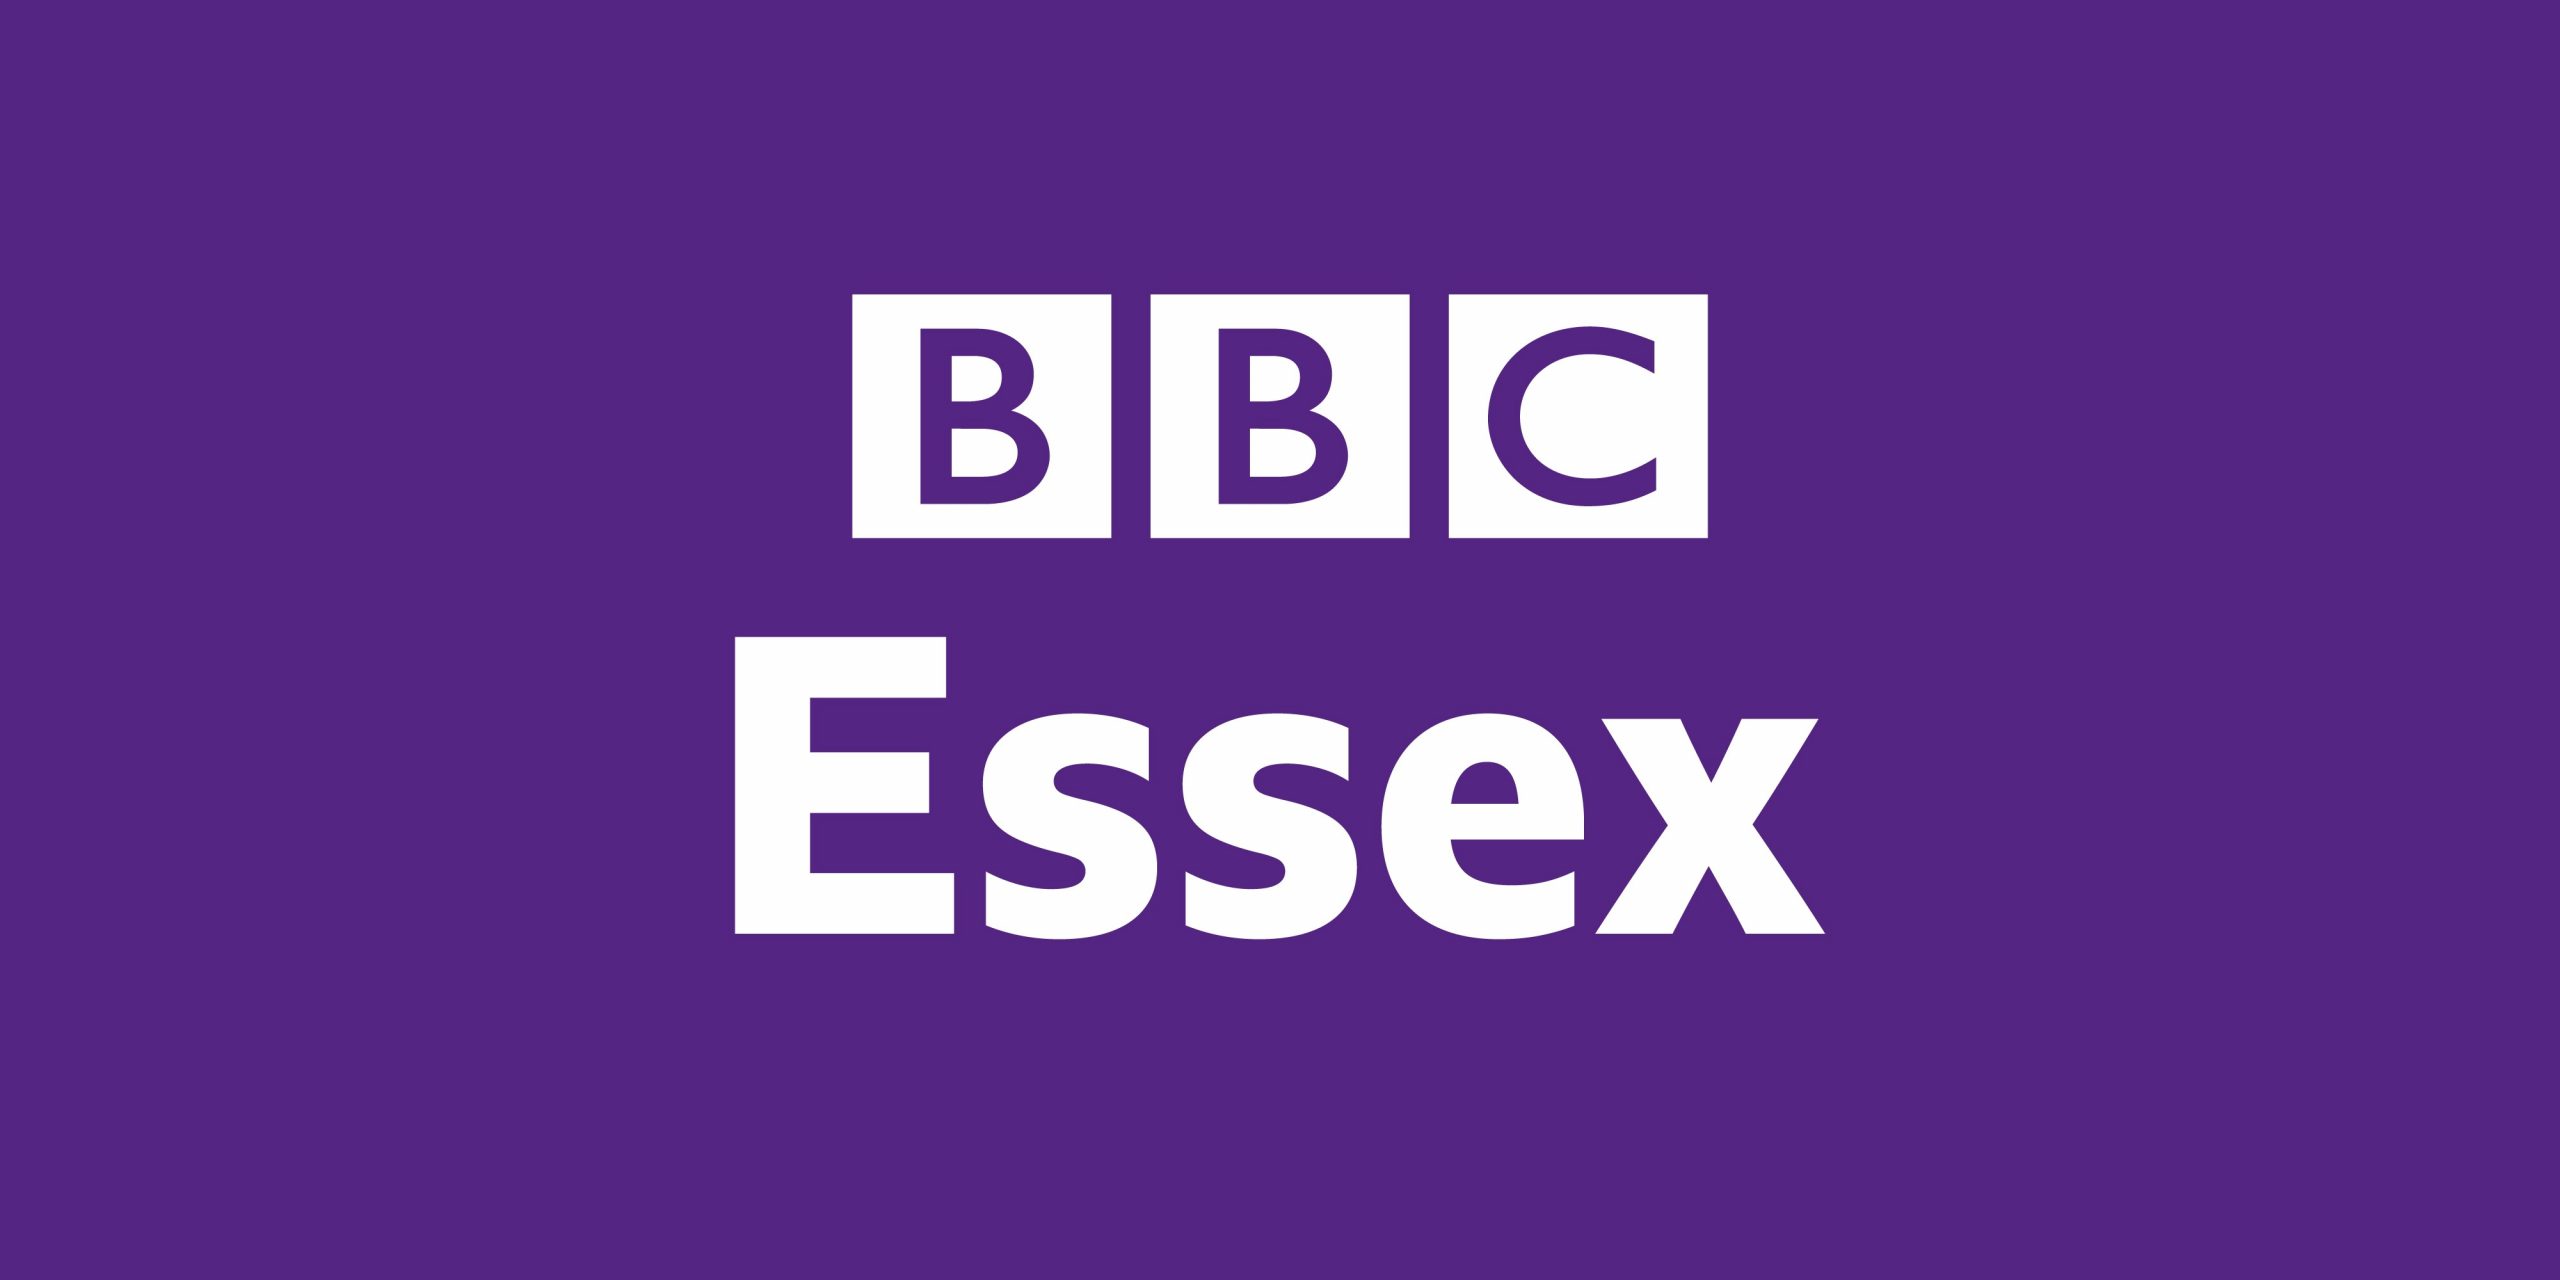 \Tune in to BBC Essex